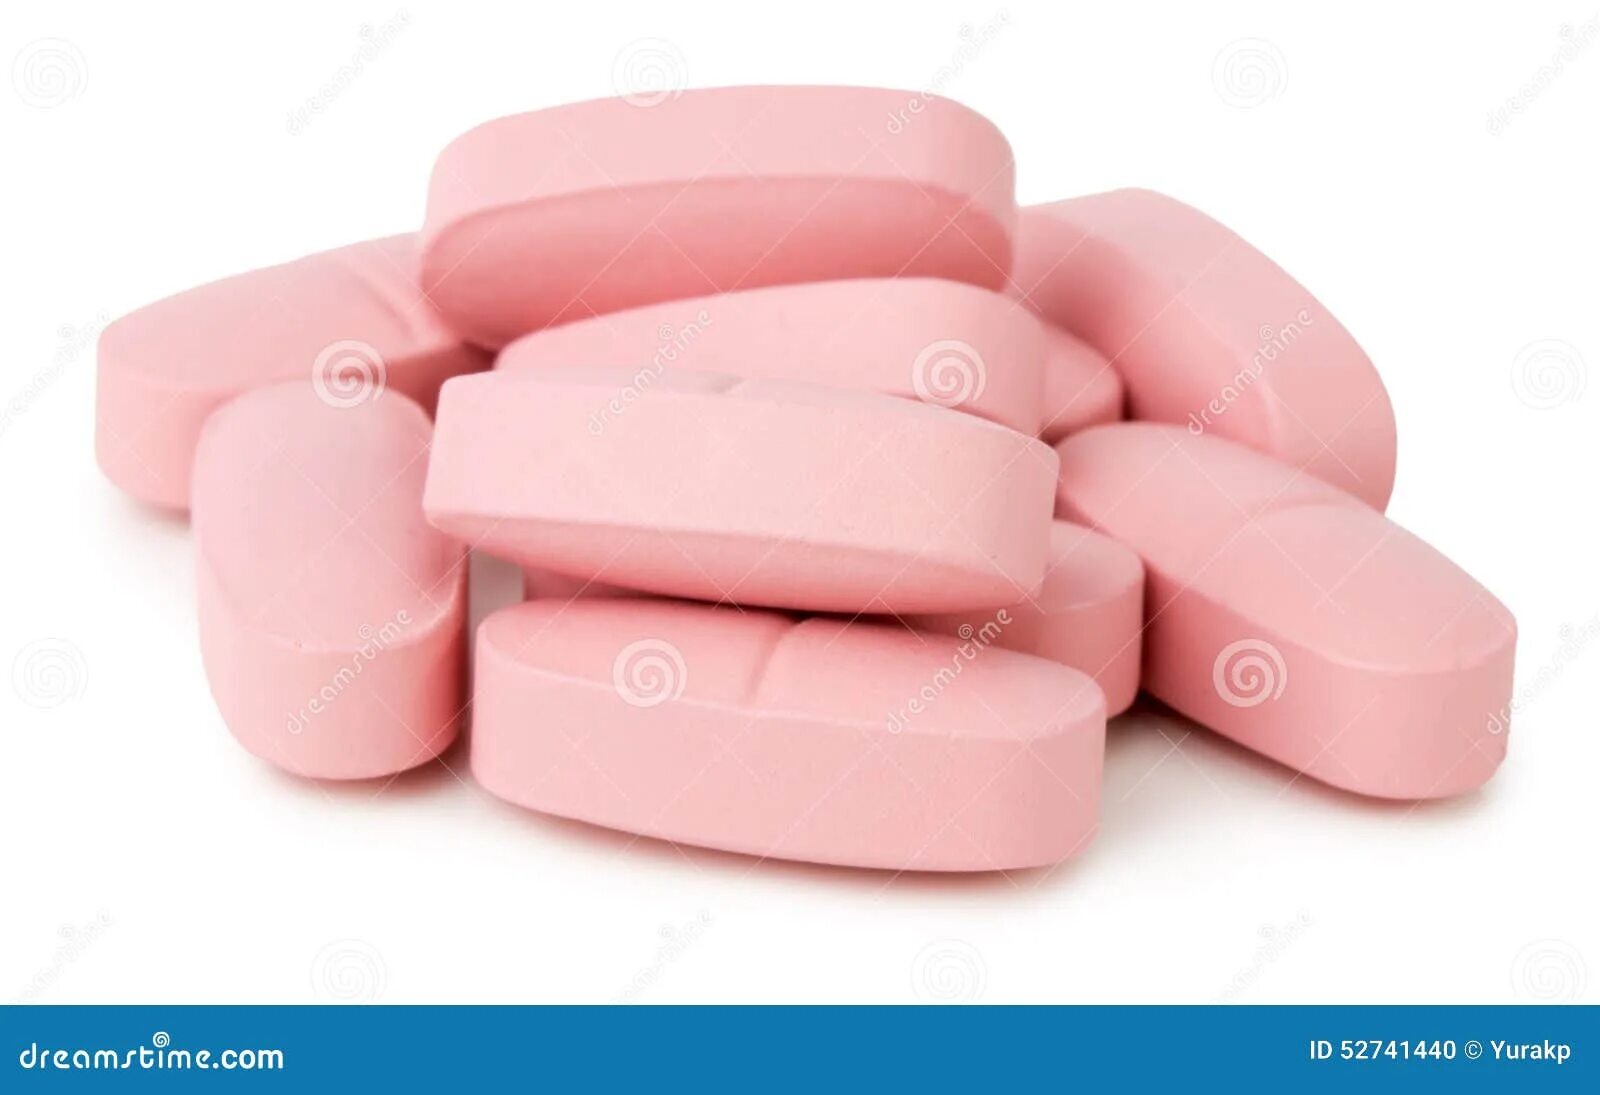 Розовые таблетки. Таблетки розового цвета. Большая розовая таблетка. Розовые плоские таблетки.